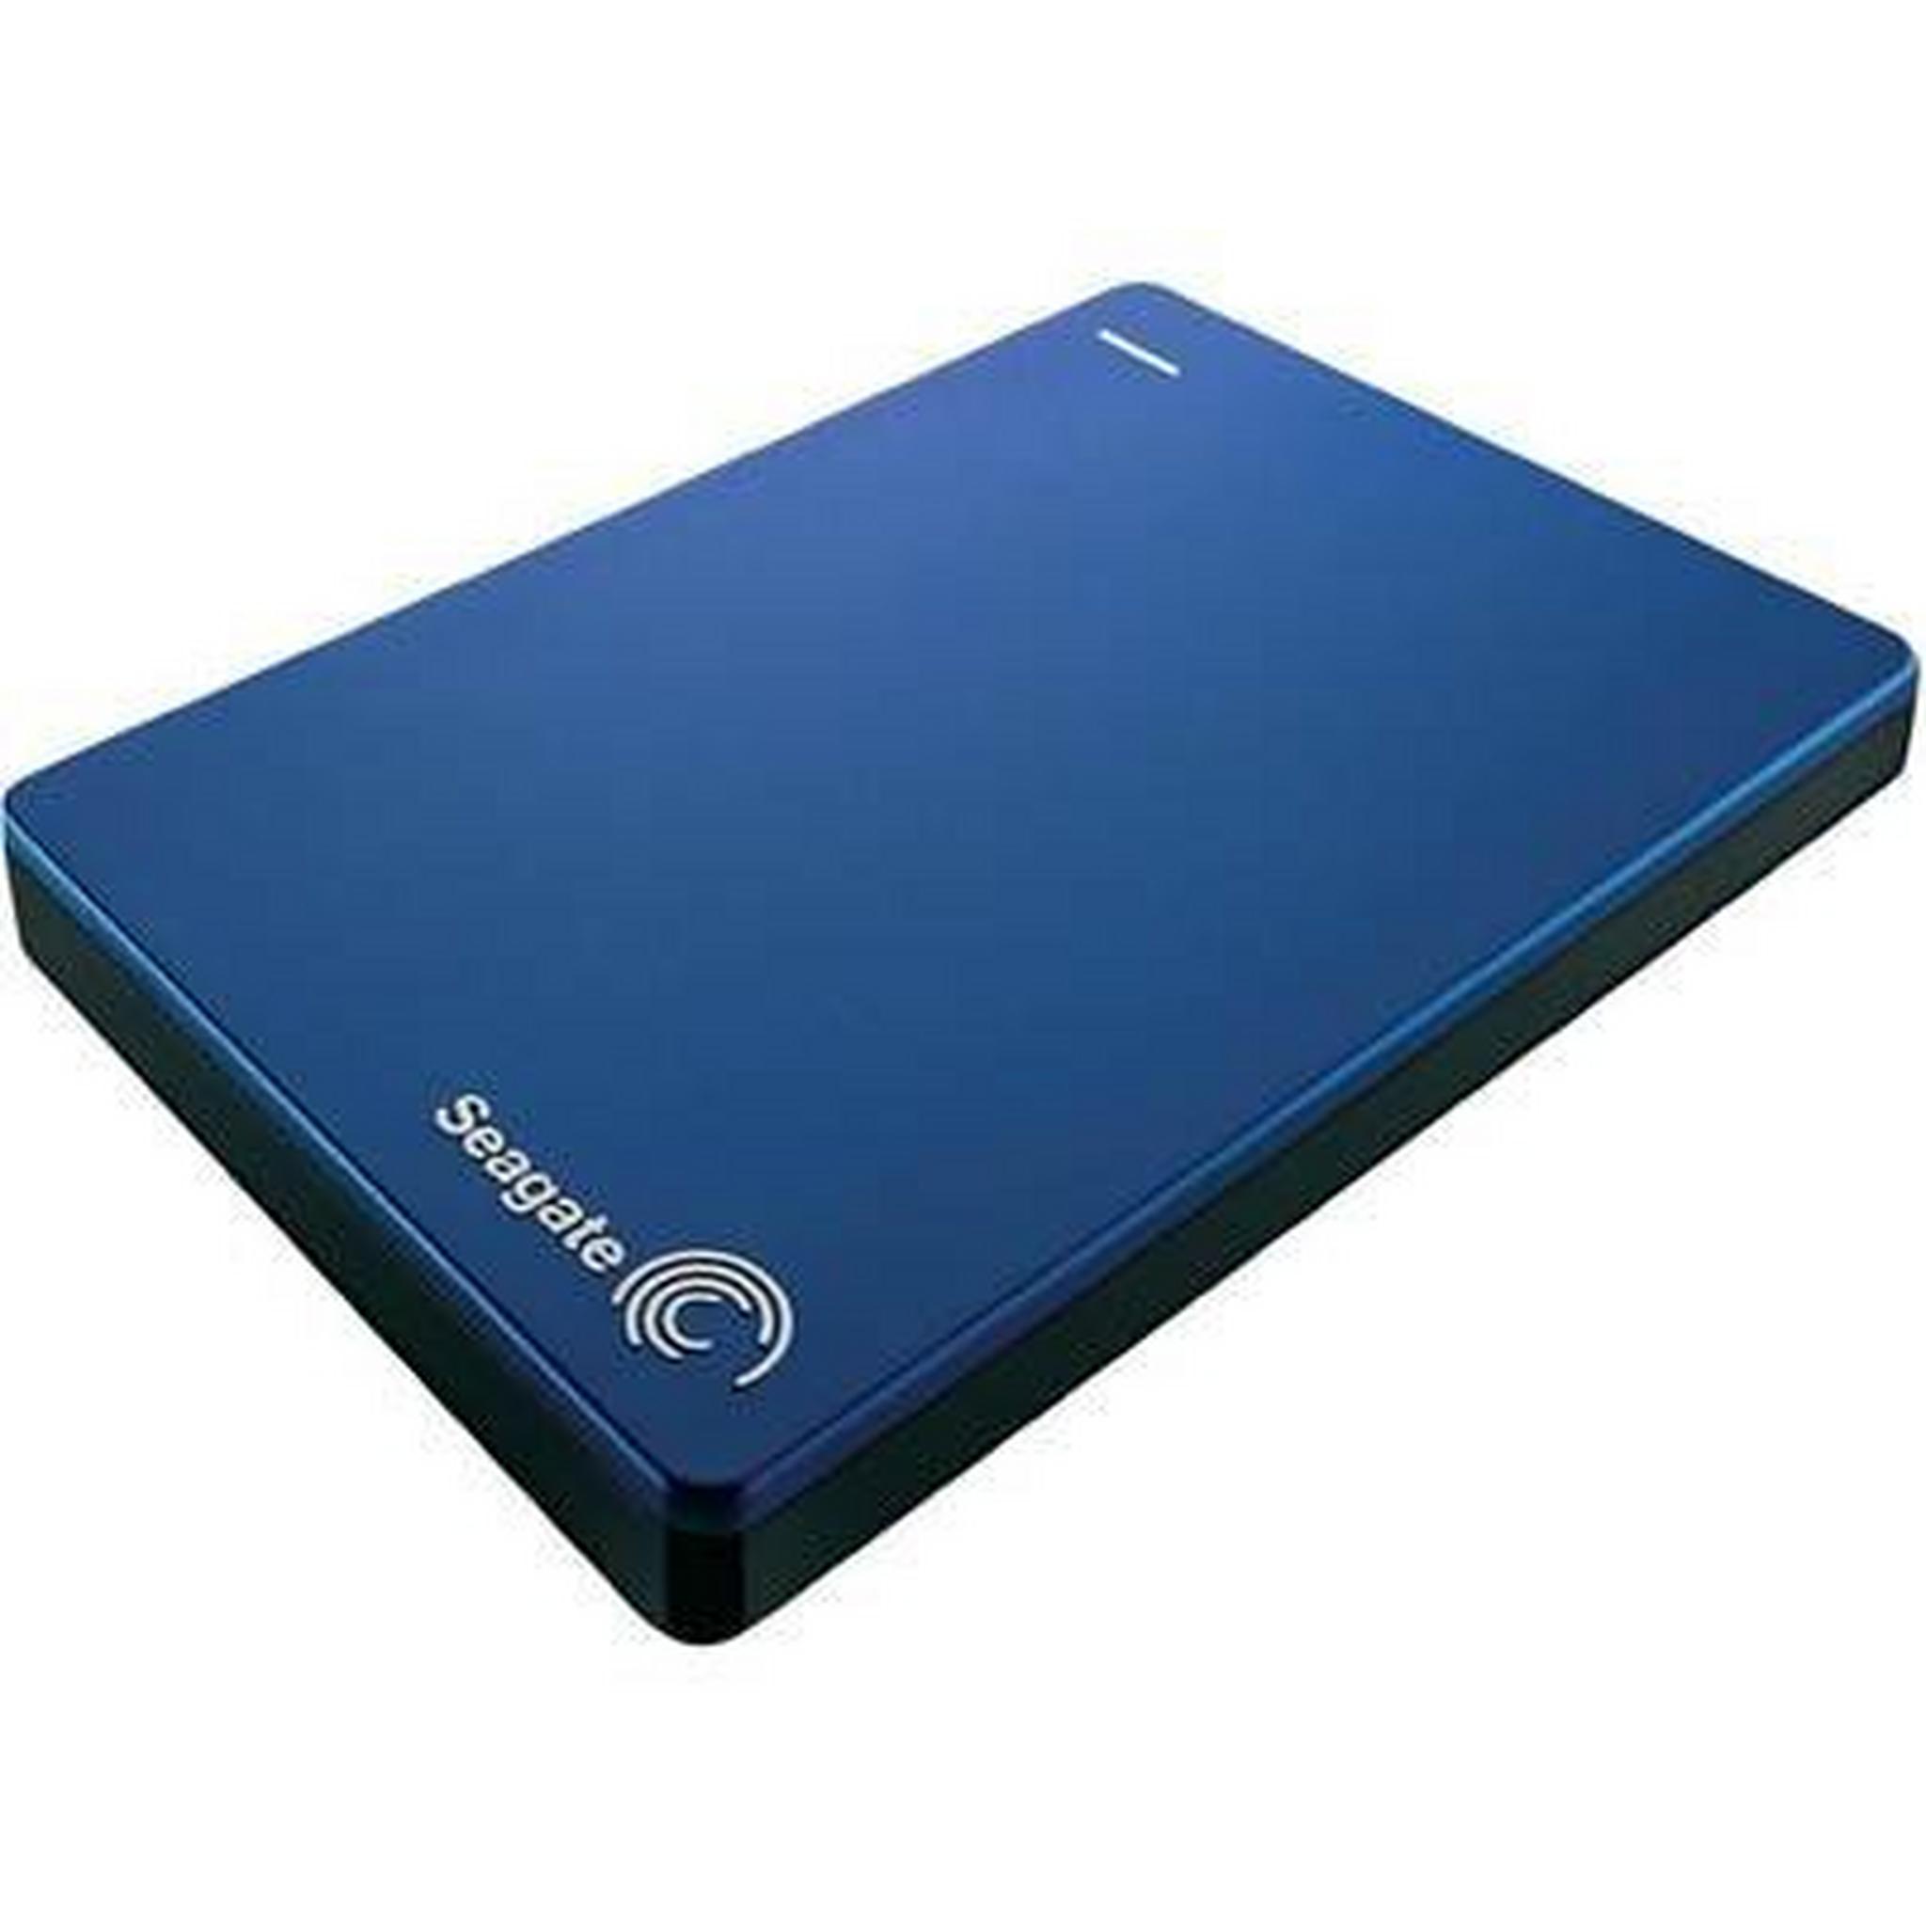 Seagate Hard Drive 2TB HDD - Blue - STDR2000202